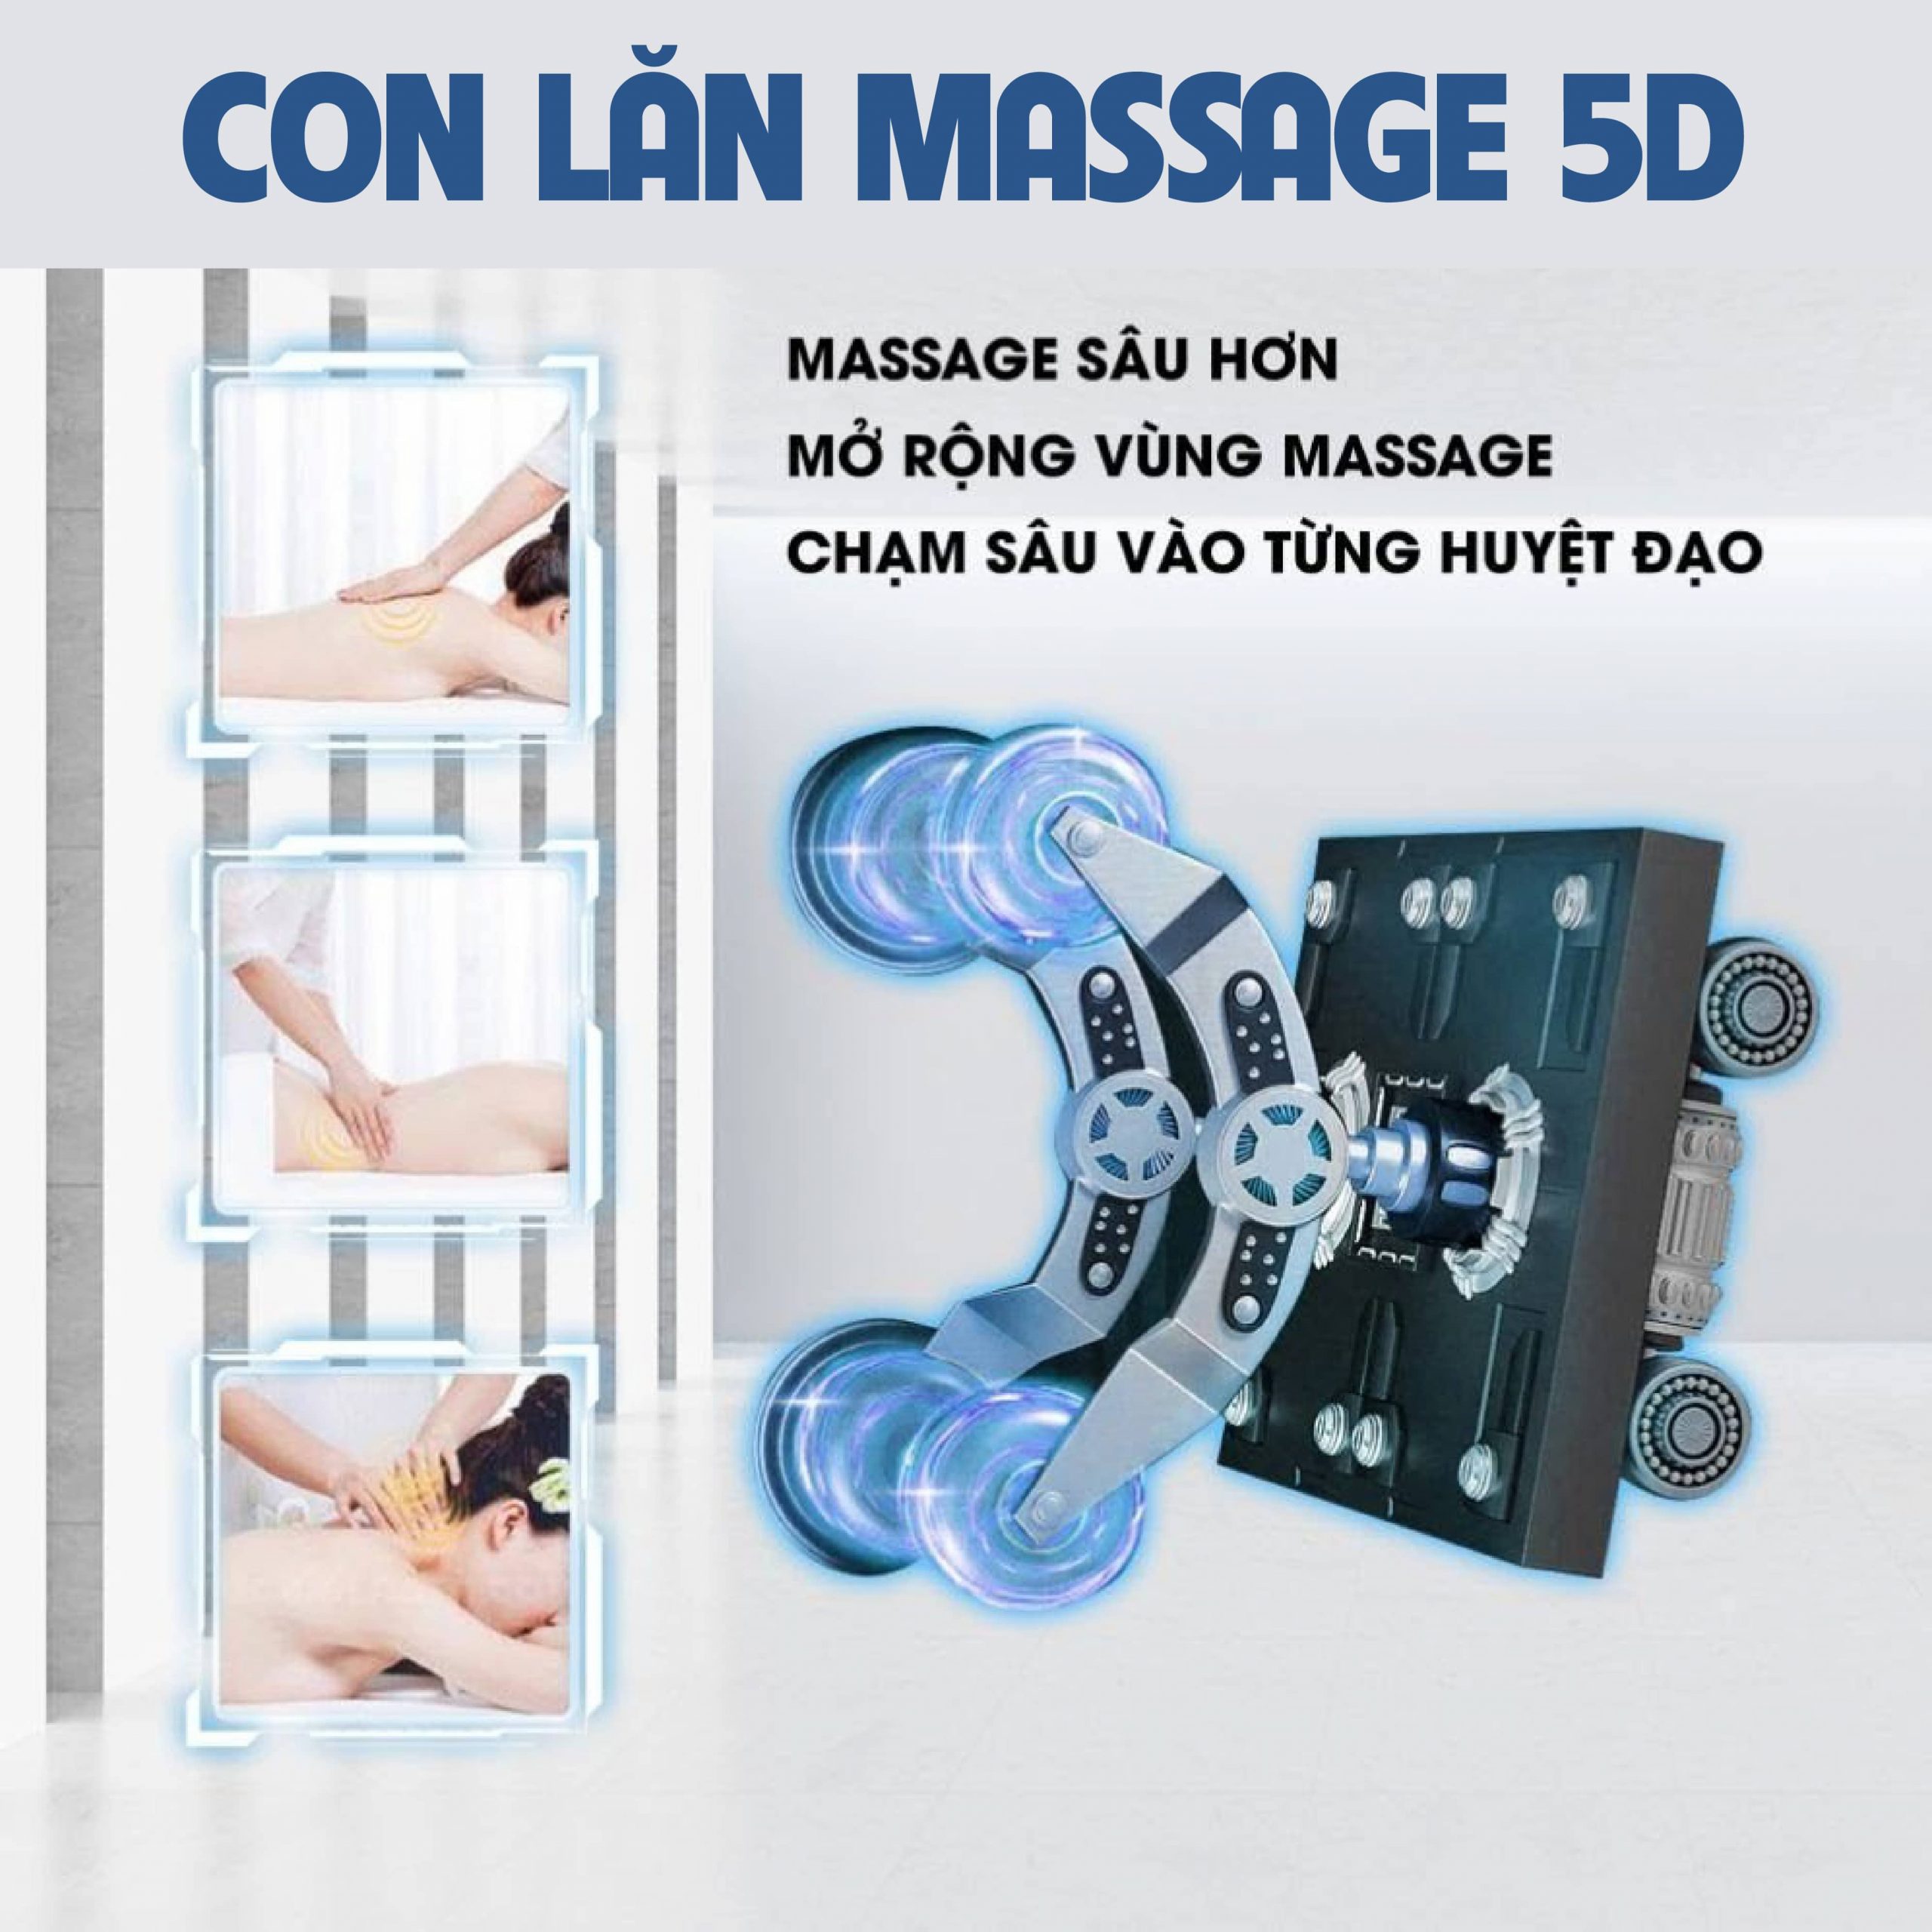 Con lăn massage 5D chuyên sâu với vùng diện tích nhào nặn massage rộng hơn